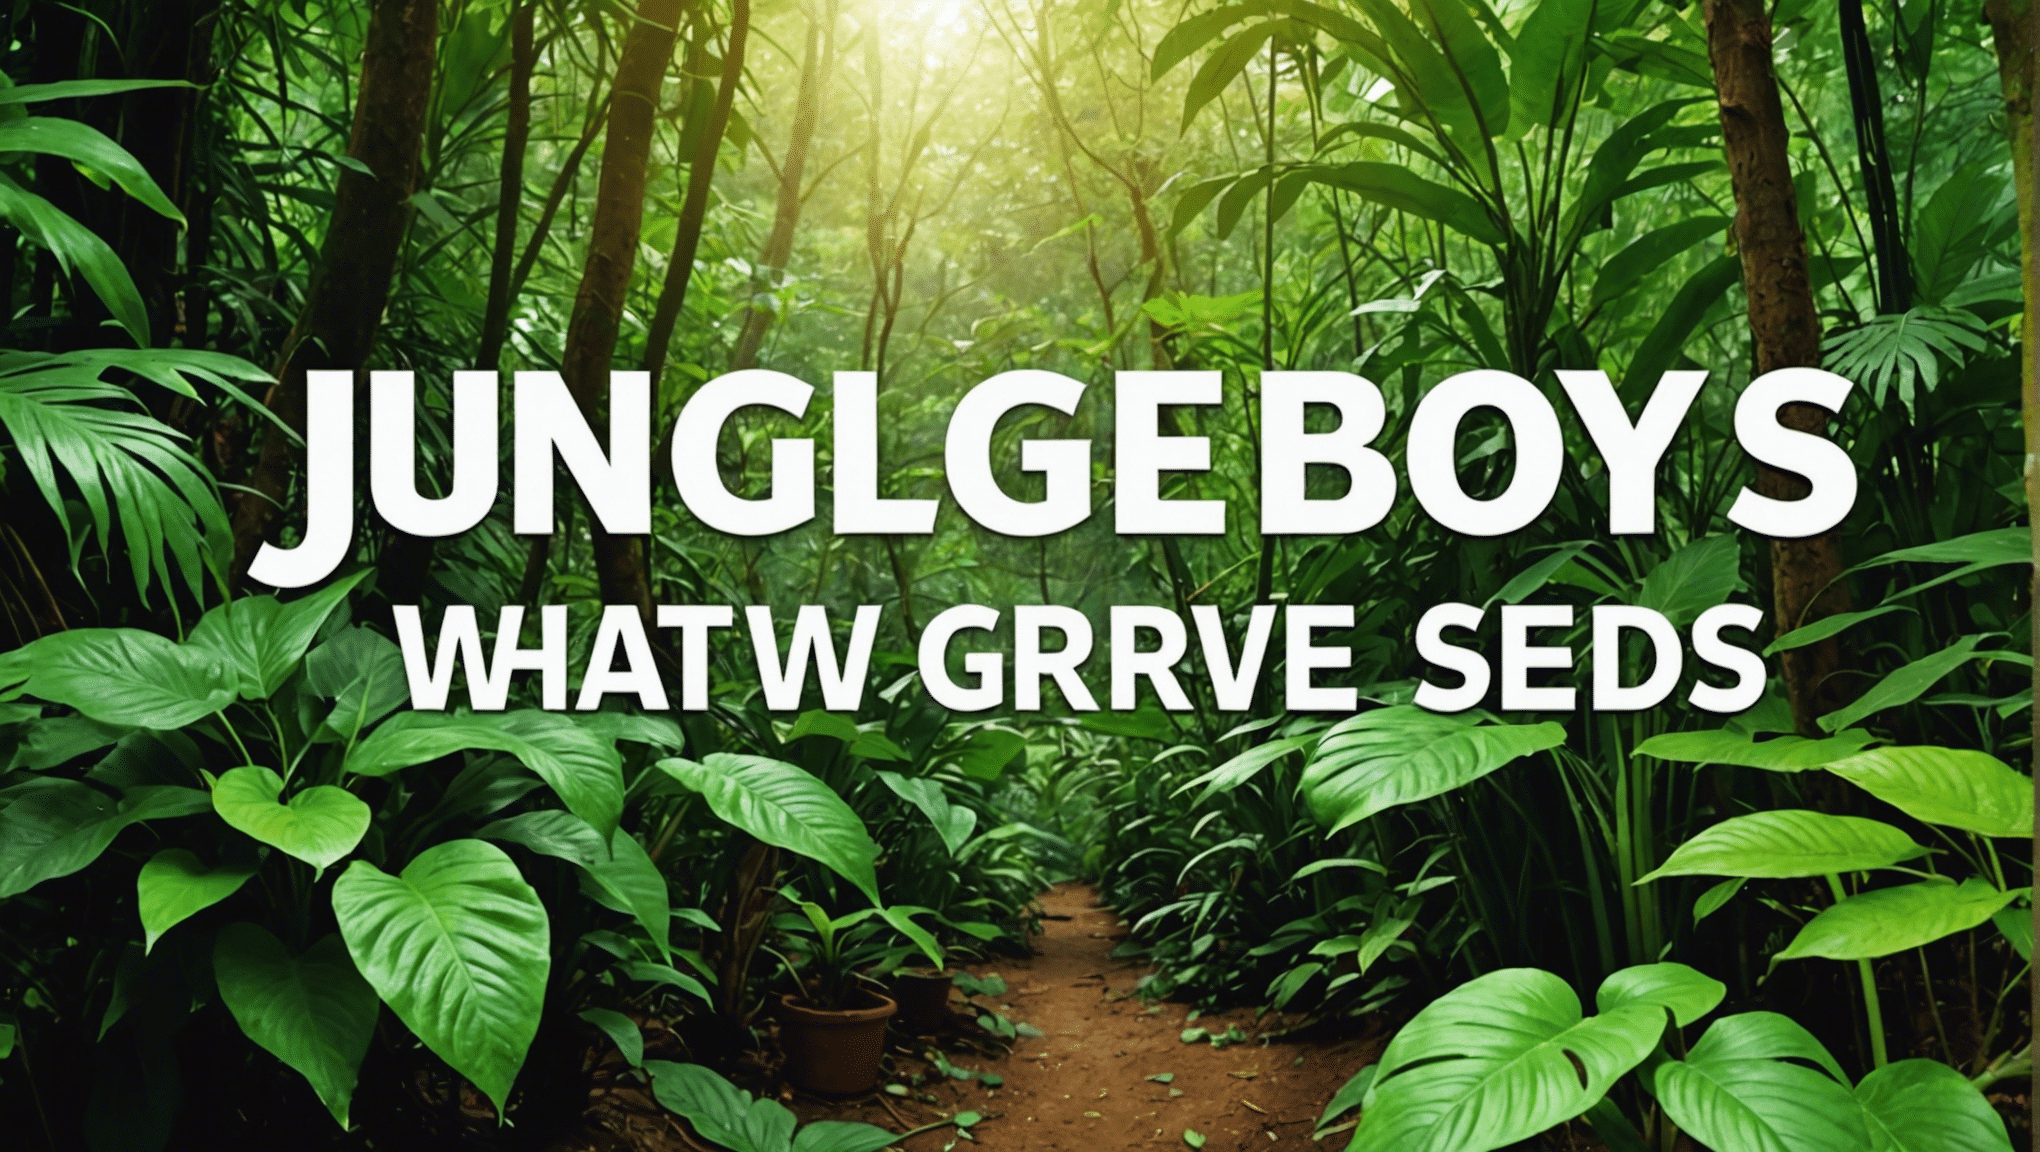 descubra o significado das sementes dos meninos da selva e seu processo de crescimento neste guia completo. aprenda sobre as características únicas e técnicas de cultivo das sementes dos meninos da selva.